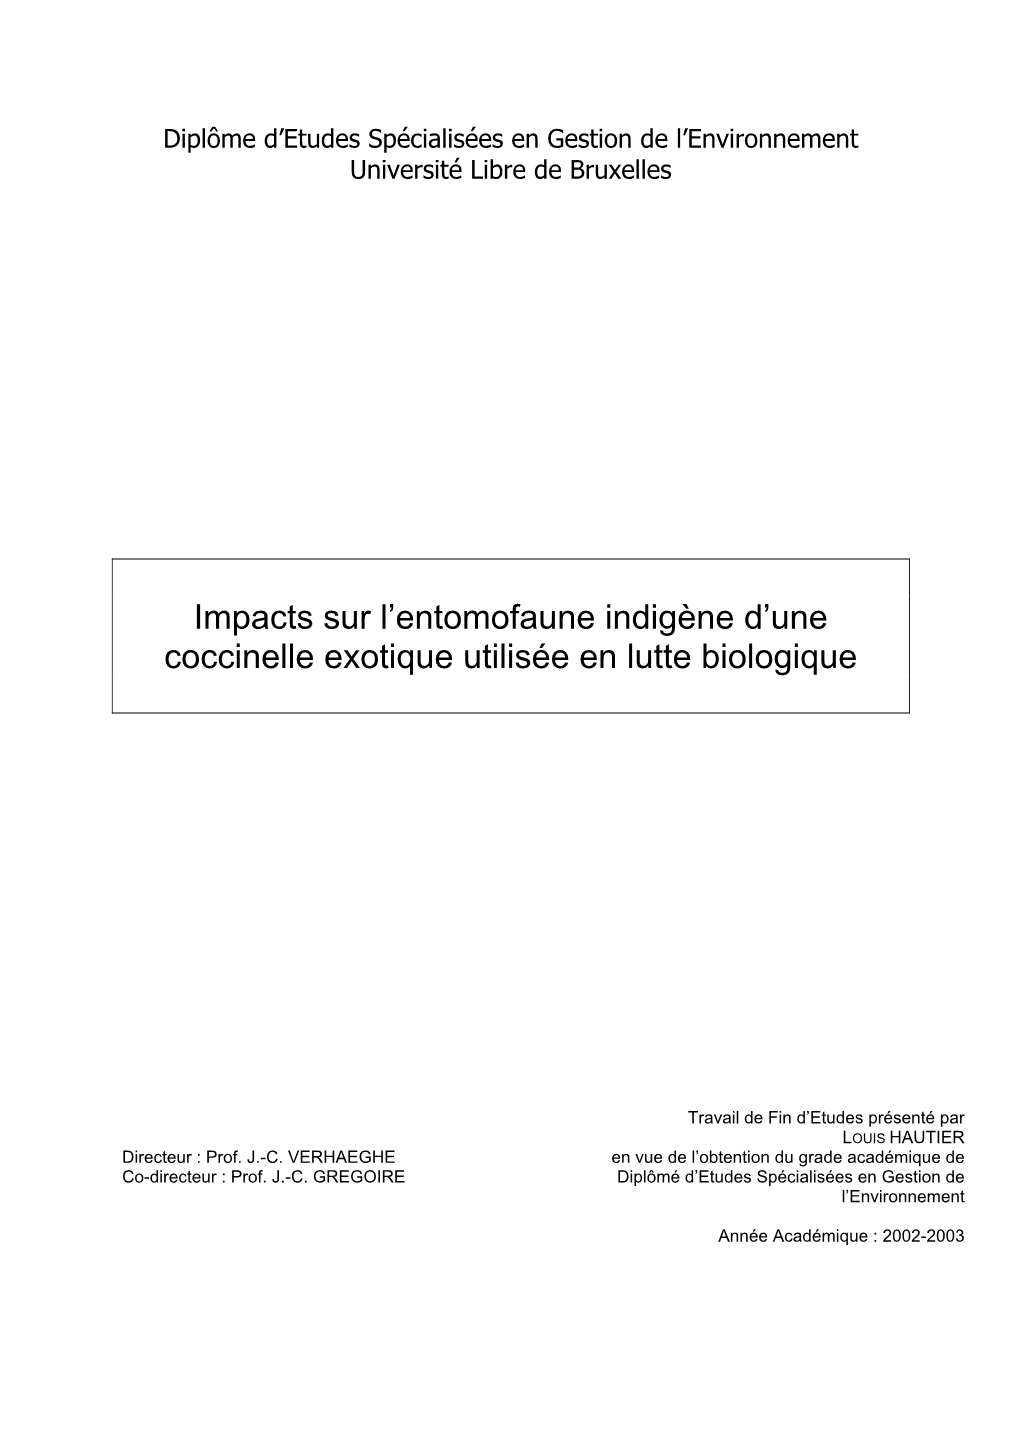 Impacts Sur L'entomofaune Indigène D'une Coccinelle Exotique Utilisée